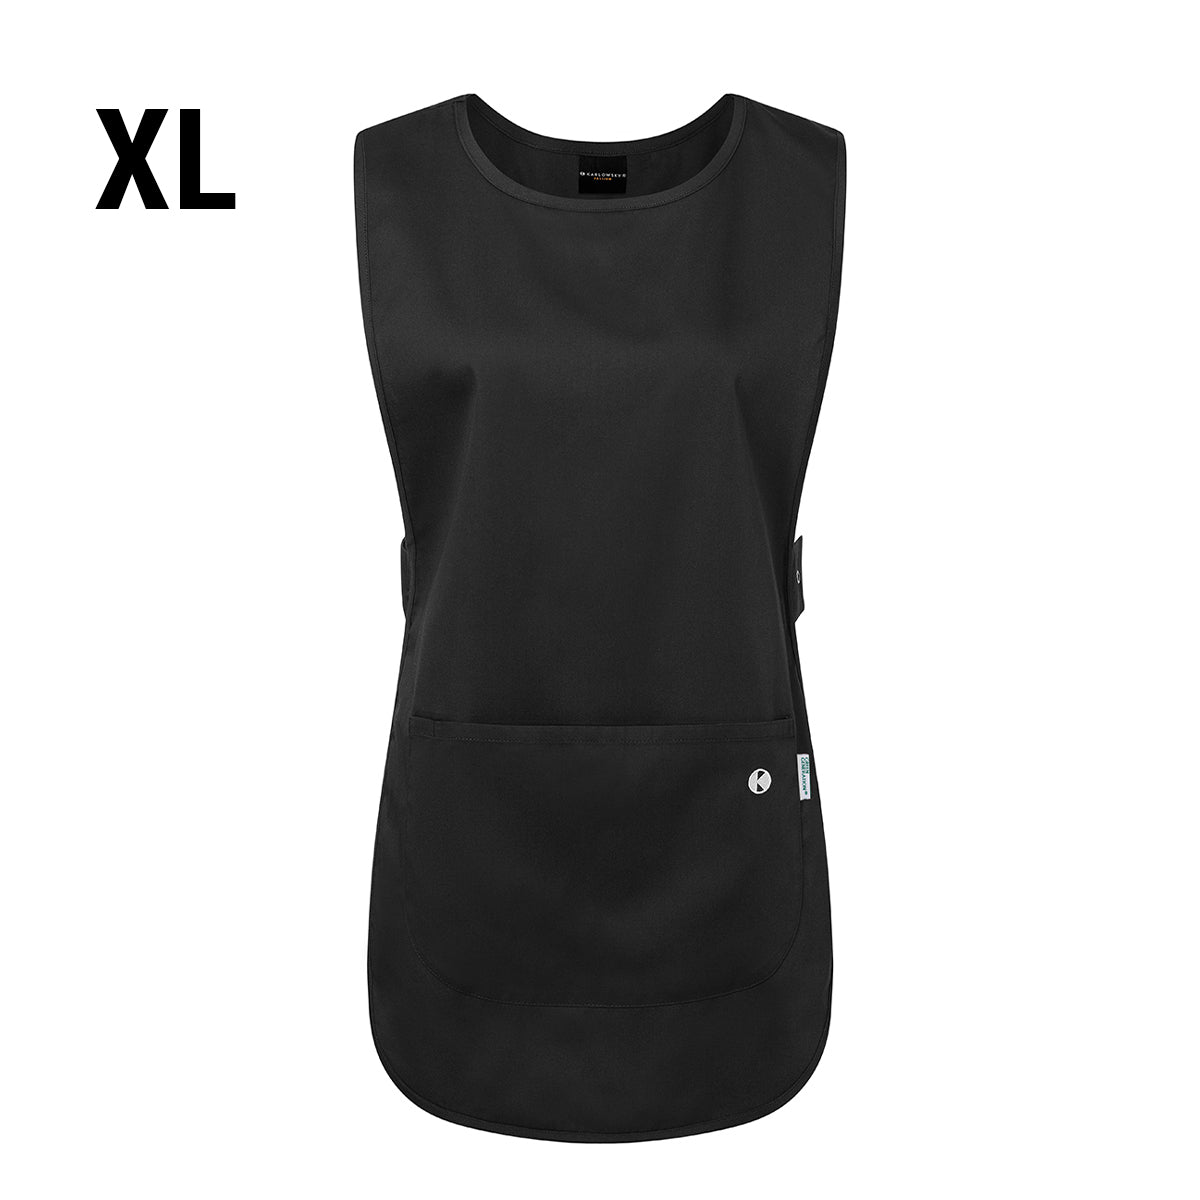 (6 stk.) Karlowsky - Throw Over Jacket Essential - Sort - Størrelse: XL